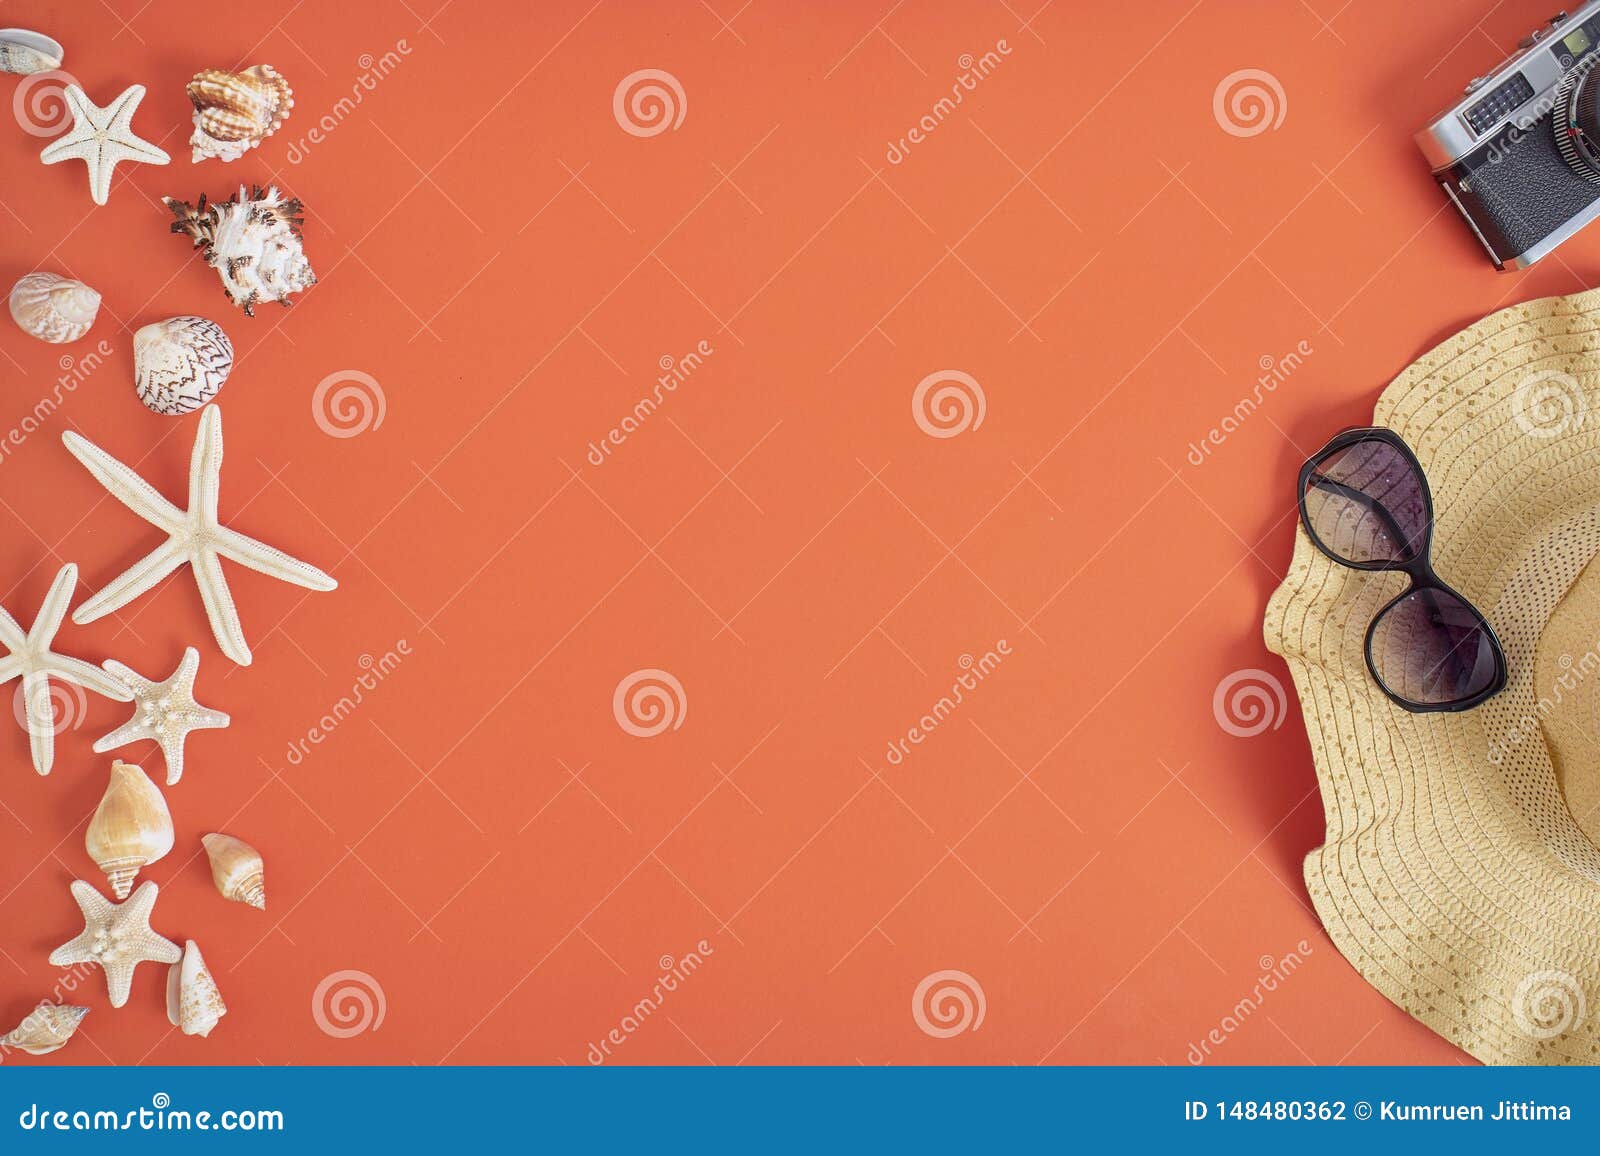 Summer Holiday Vacation Concept Orange Background Stock Photo - Image ...